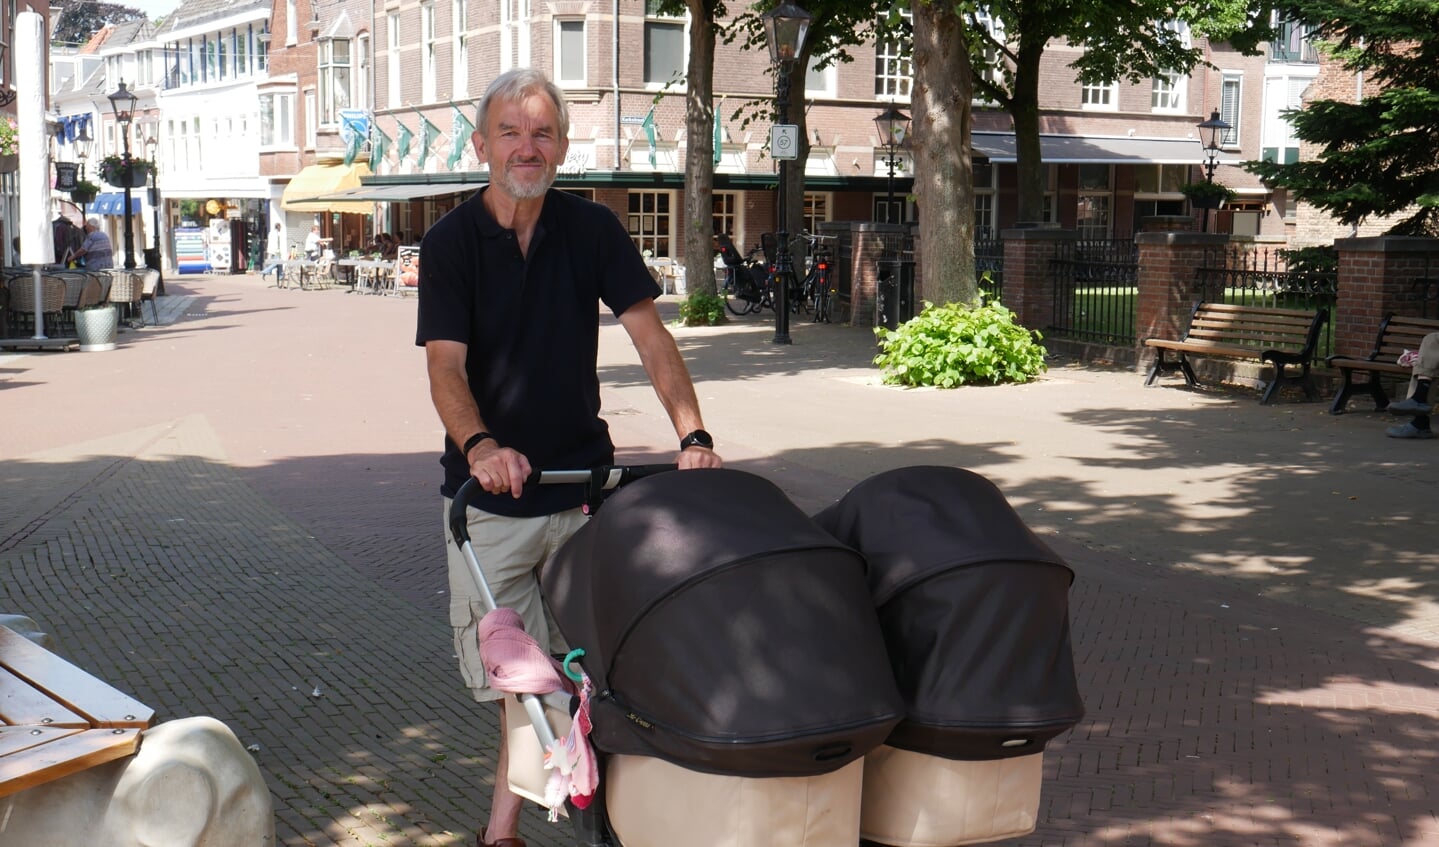 Oppasopa Jan (67) en zijn vrouw zijn blij met het winkelaanbod in Oud Rijswijk: "Alles is op loopafstand."